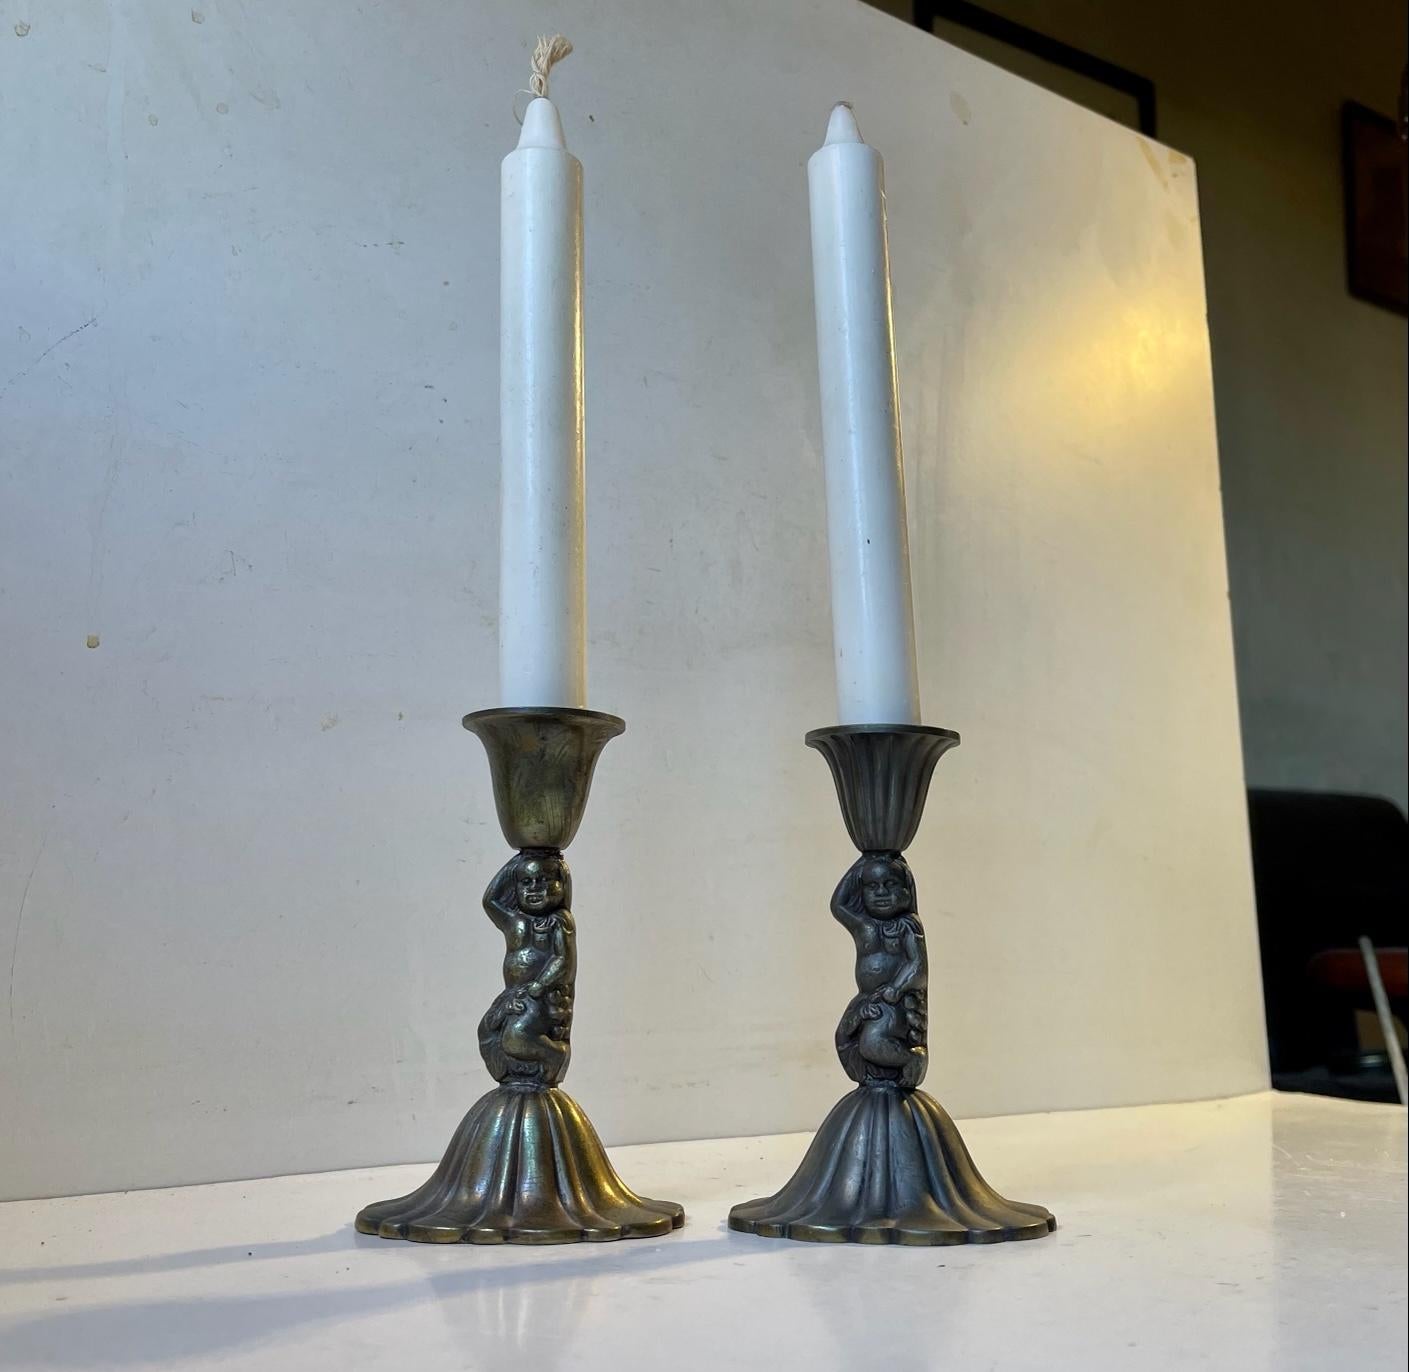 Paar Kerzenständer aus Metalllegierung mit Putten. Jedes einzelne mit unterschiedlicher Patina. Hergestellt in Italien in den späten 1940er Jahren. Dieses Set verwendet regelmäßige Kerzen in der Größe. Abmessungen: H: 13 cm, B: 8 cm (Sockel).